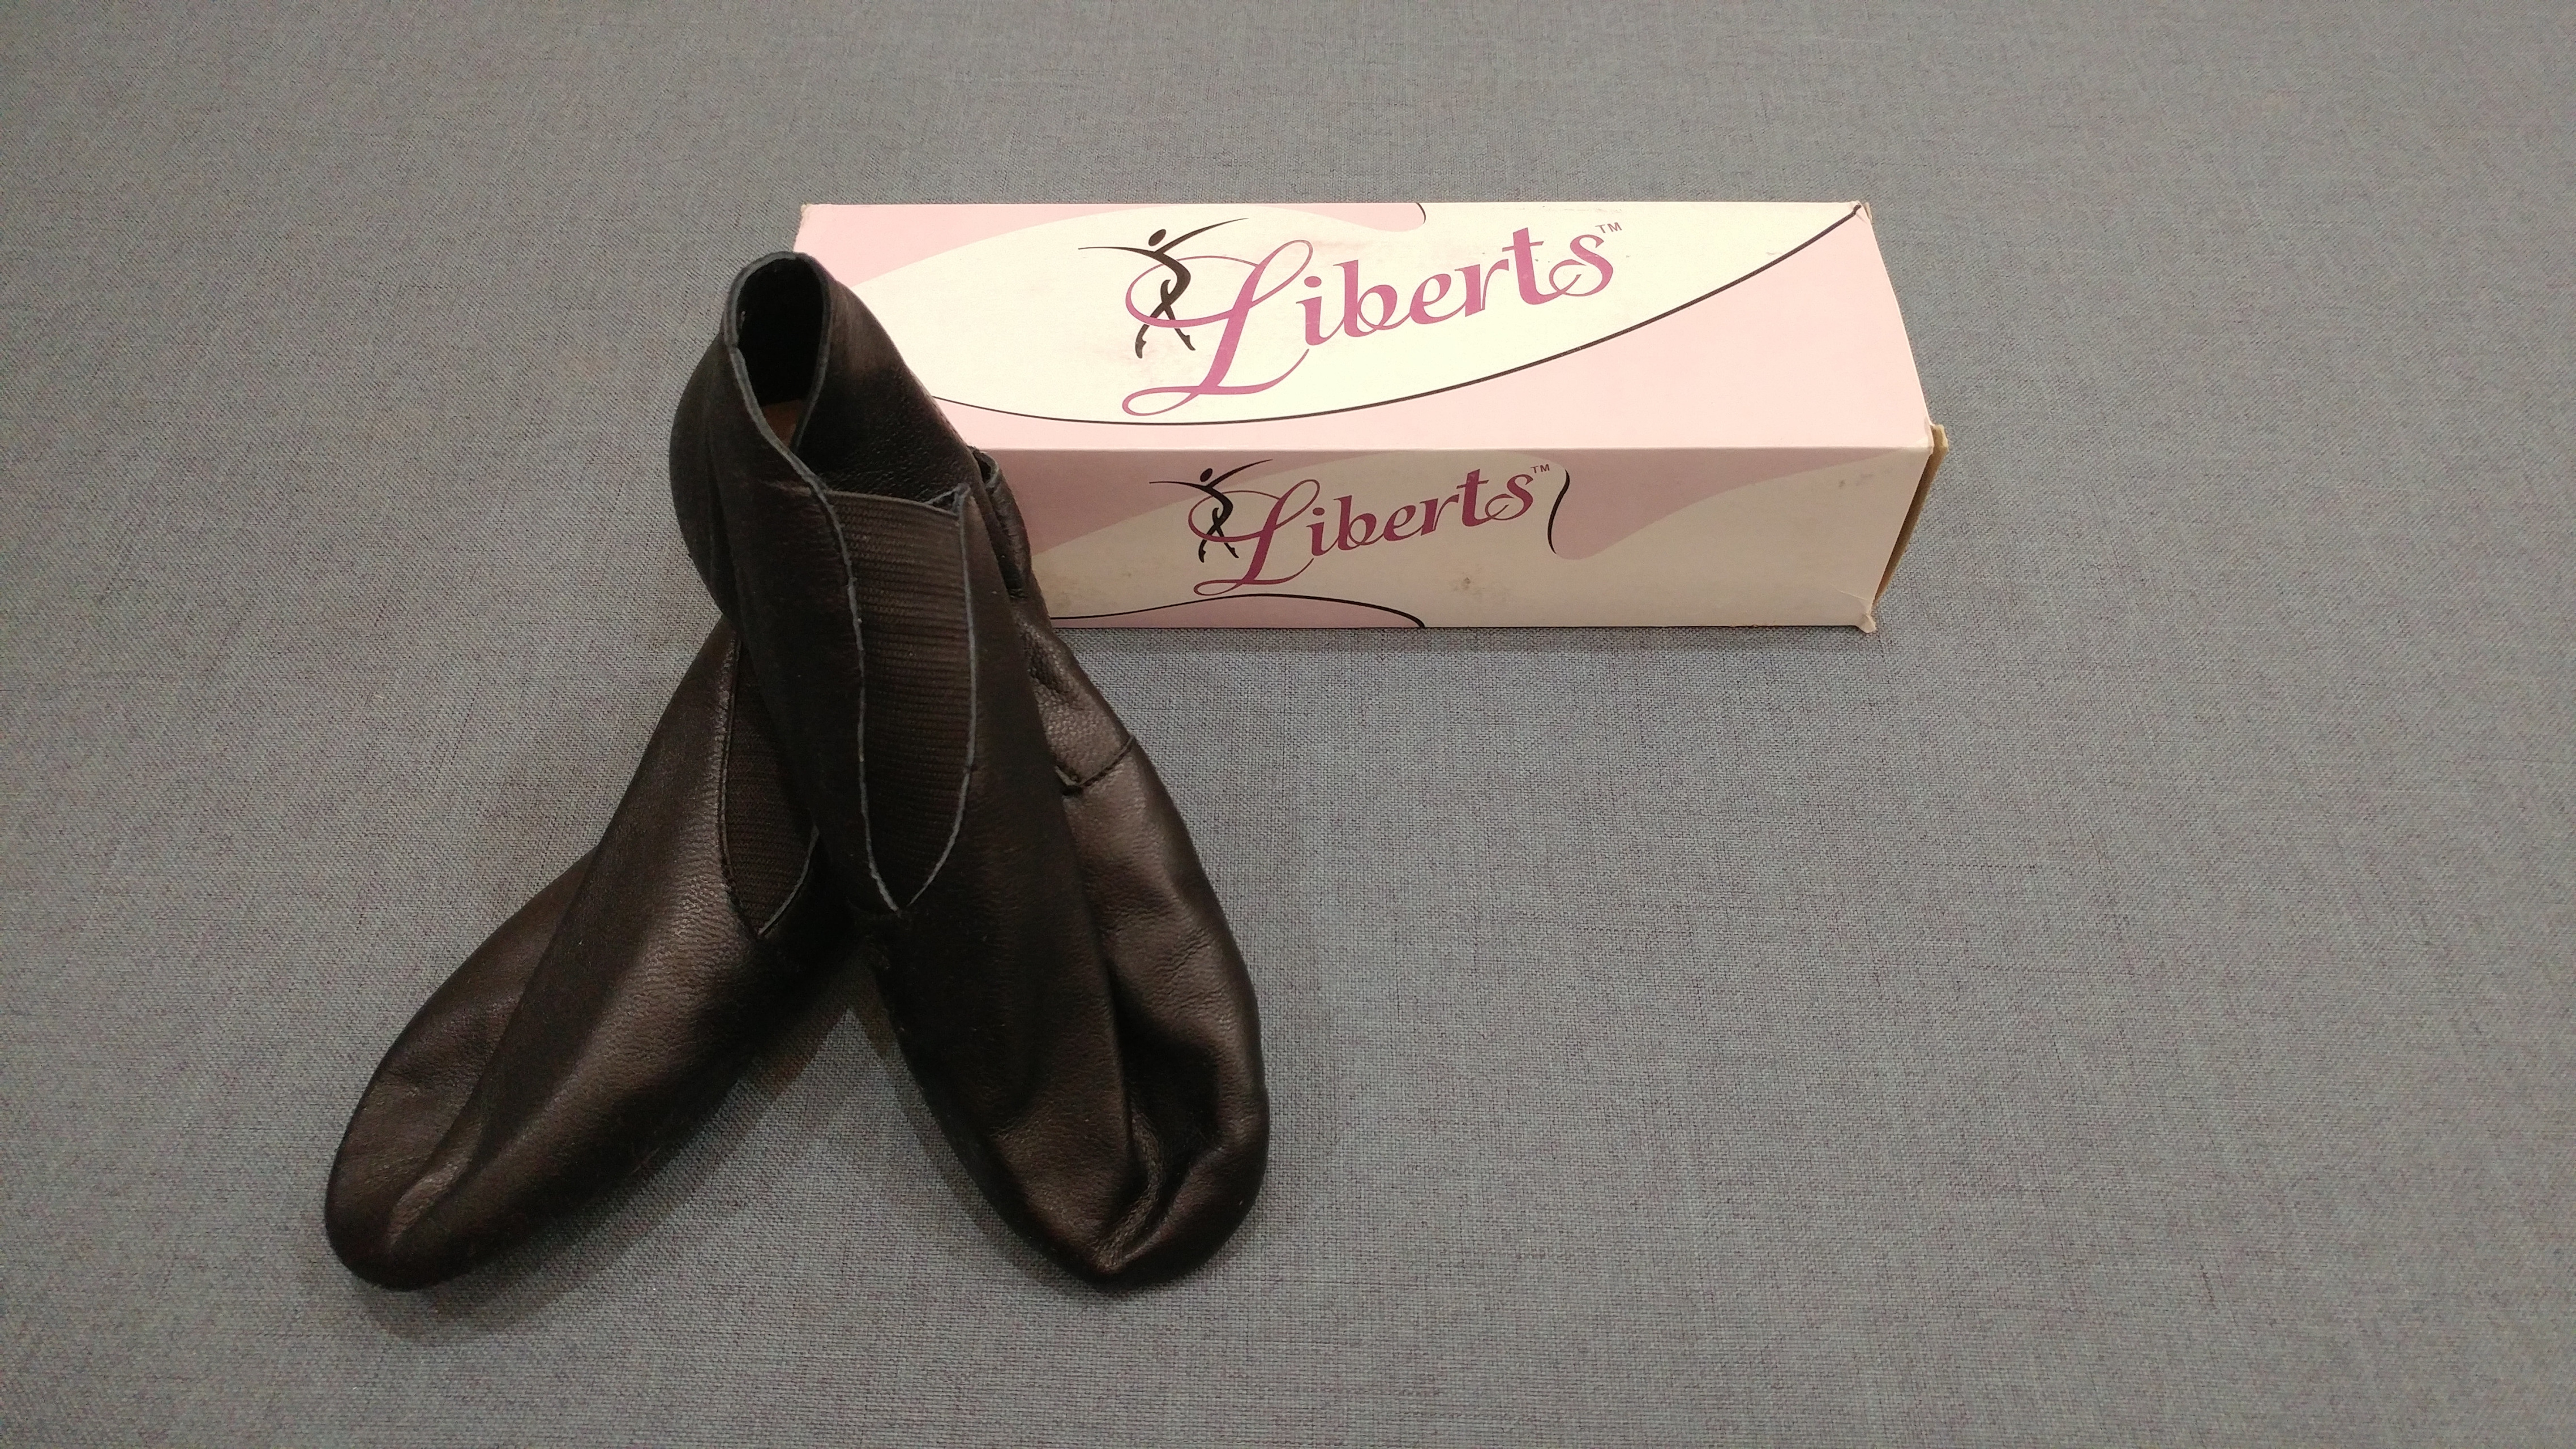 liberts dance shoes